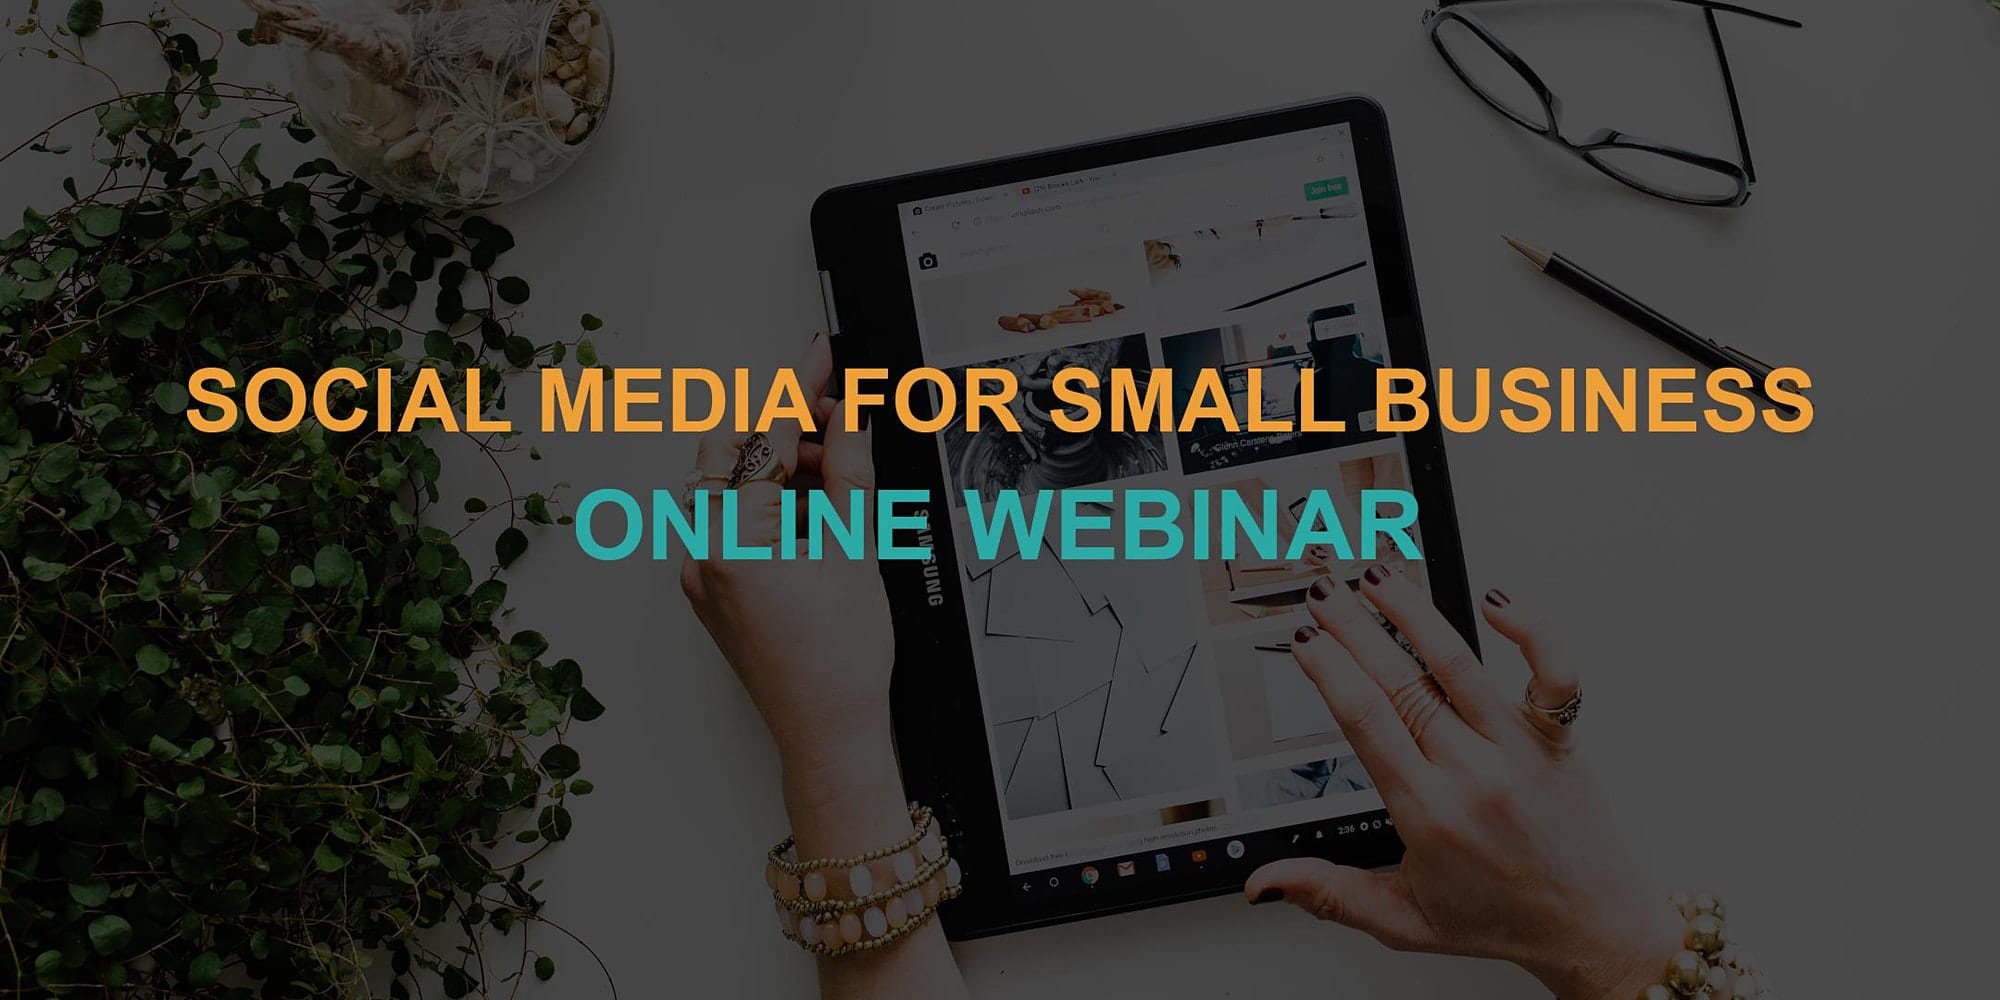 Social media for small business: Online webinar